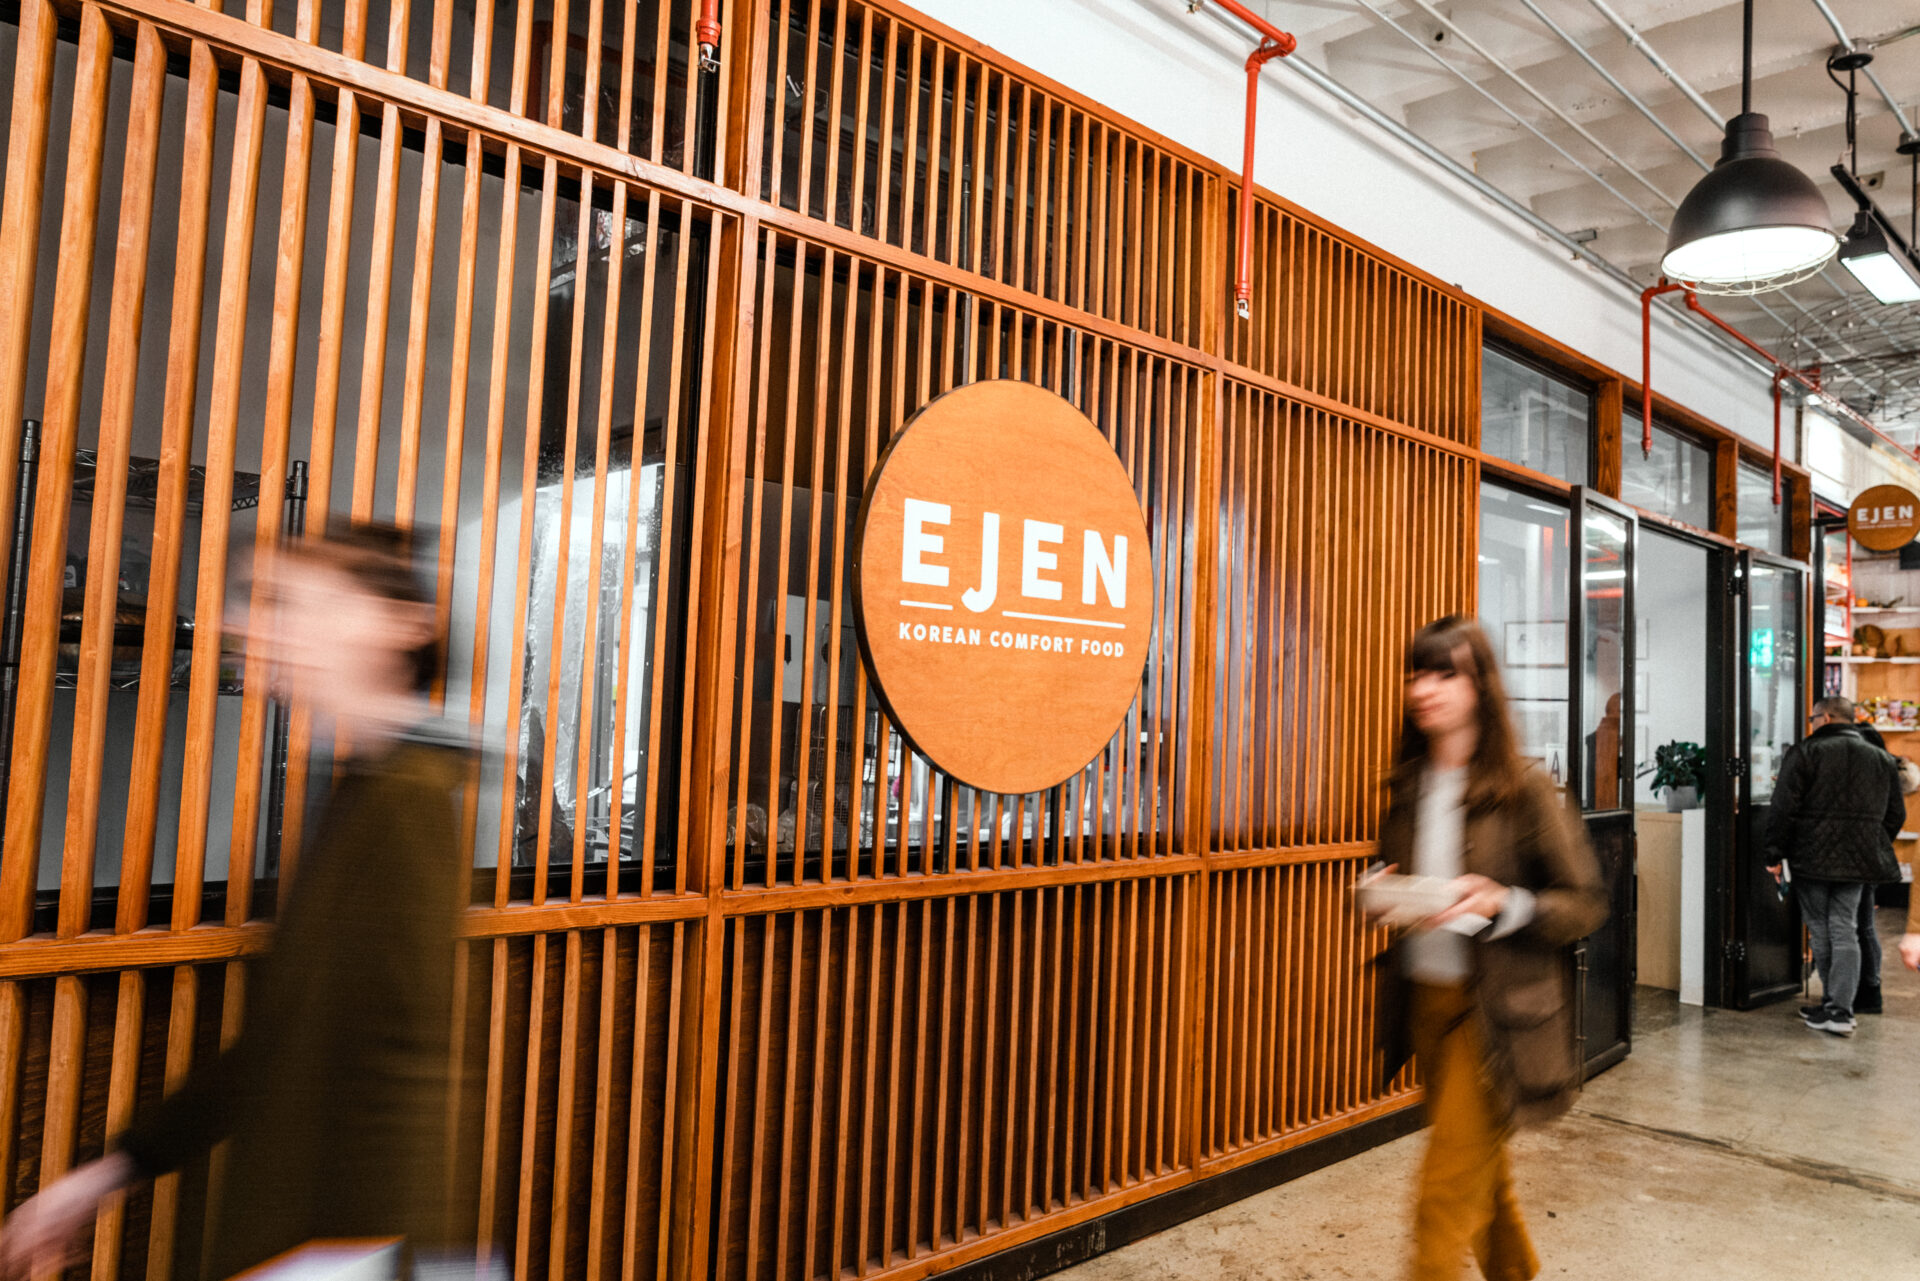 The exterior of "Ejen," a Korean comfort food restaurant.